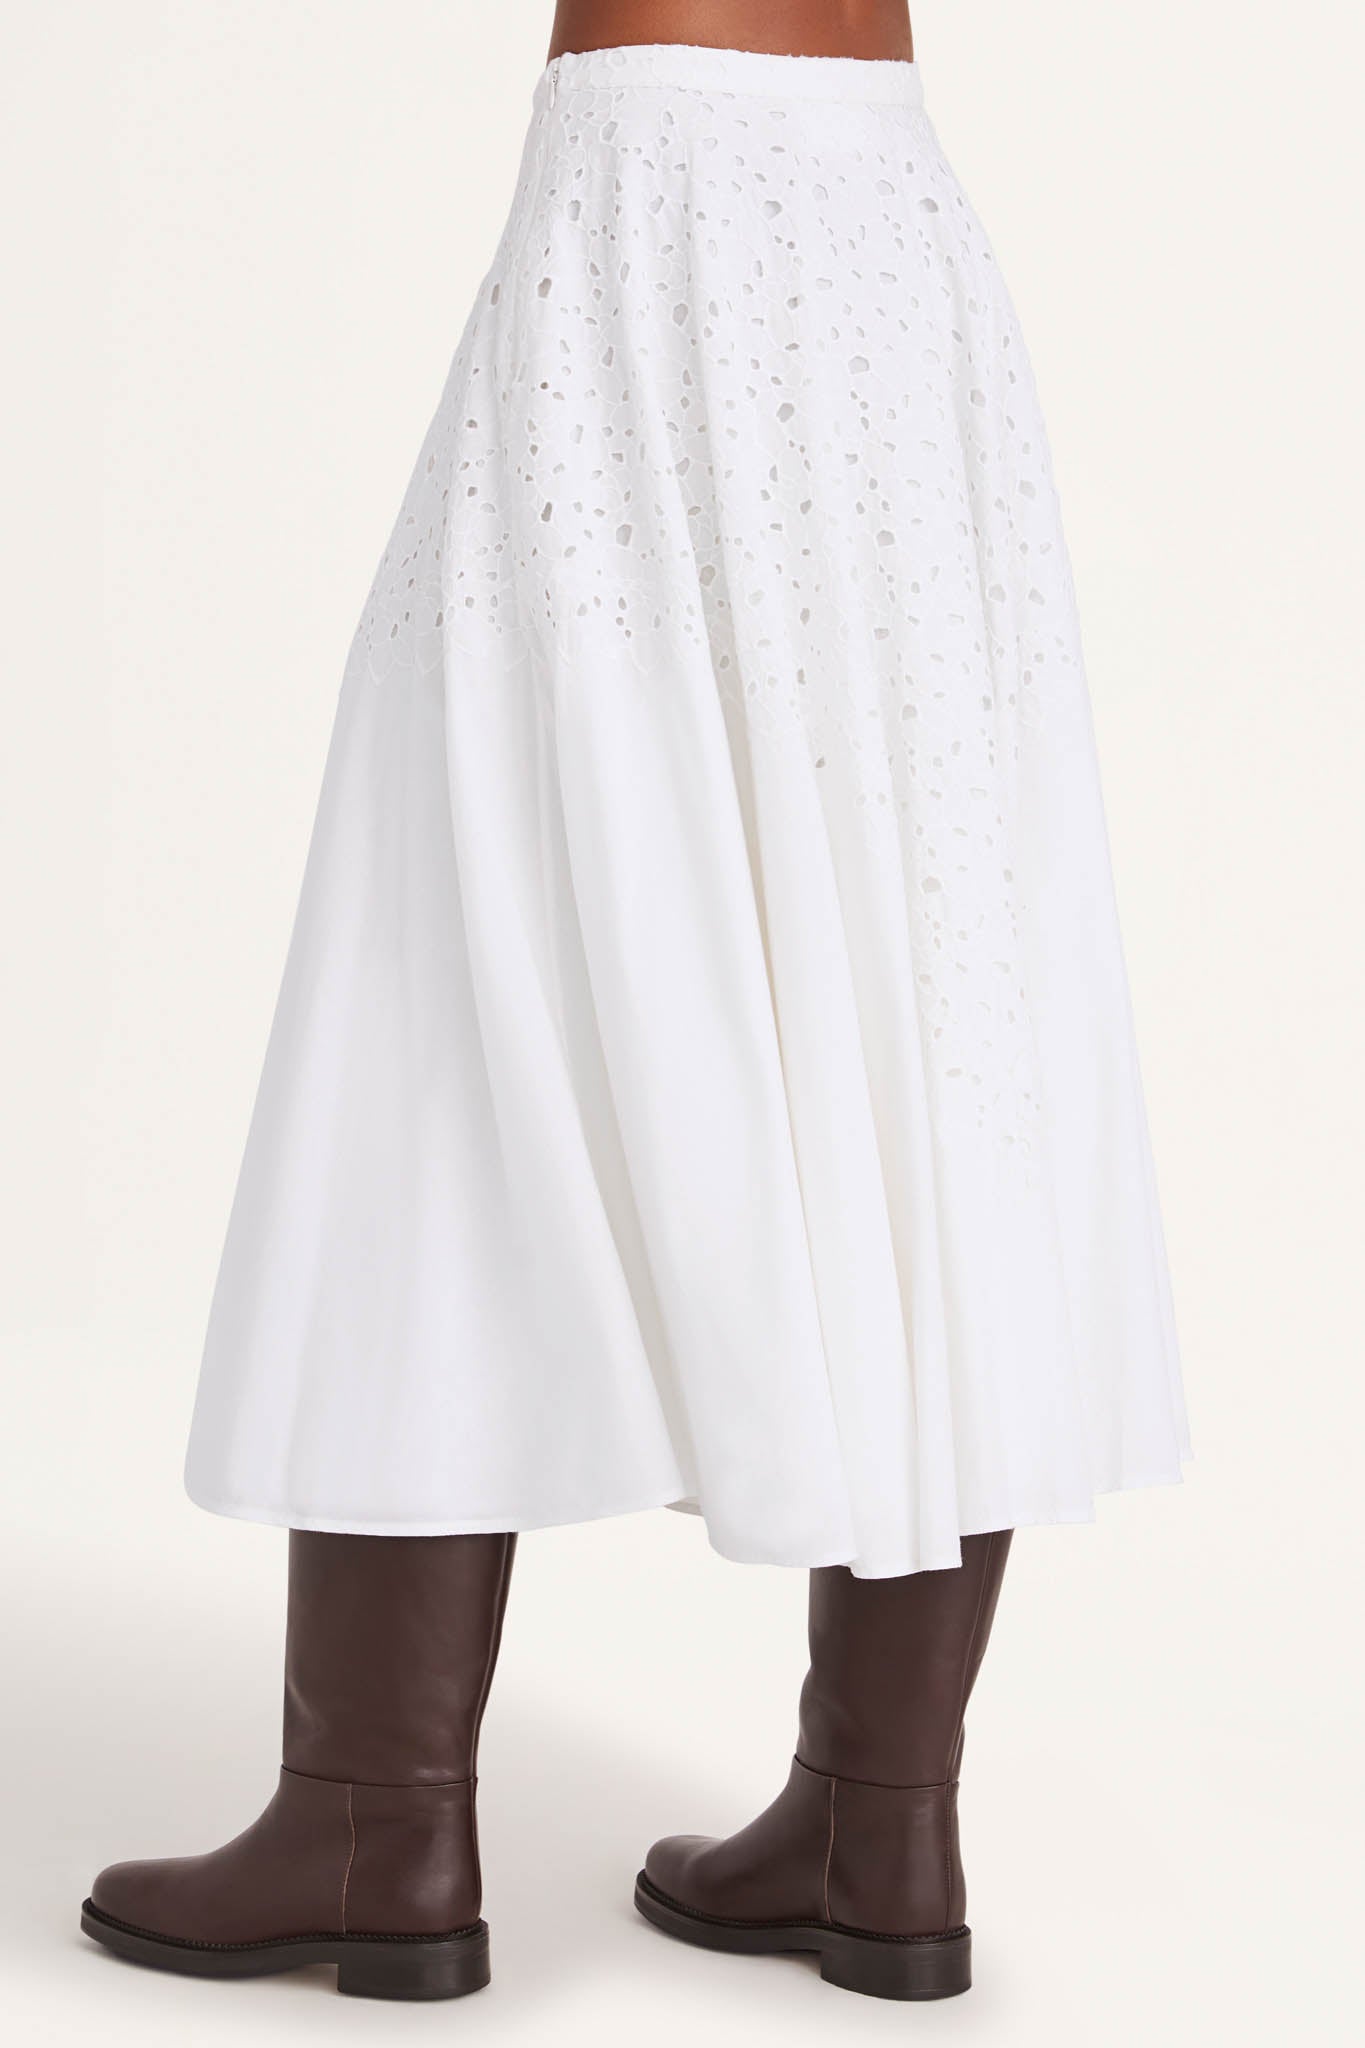 Merrick Skirt in White